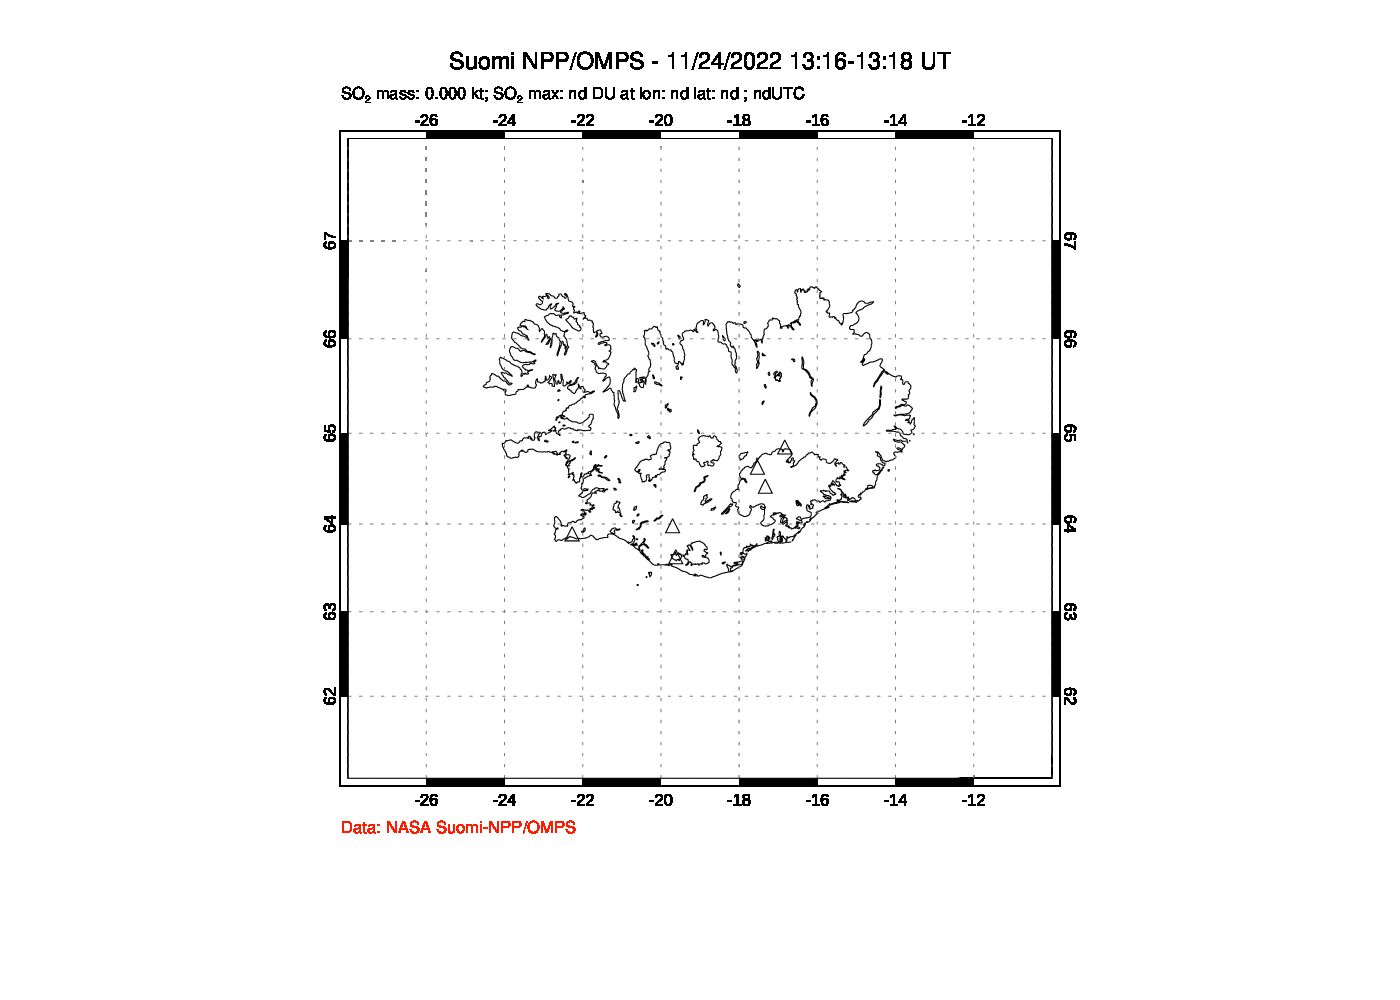 A sulfur dioxide image over Iceland on Nov 24, 2022.